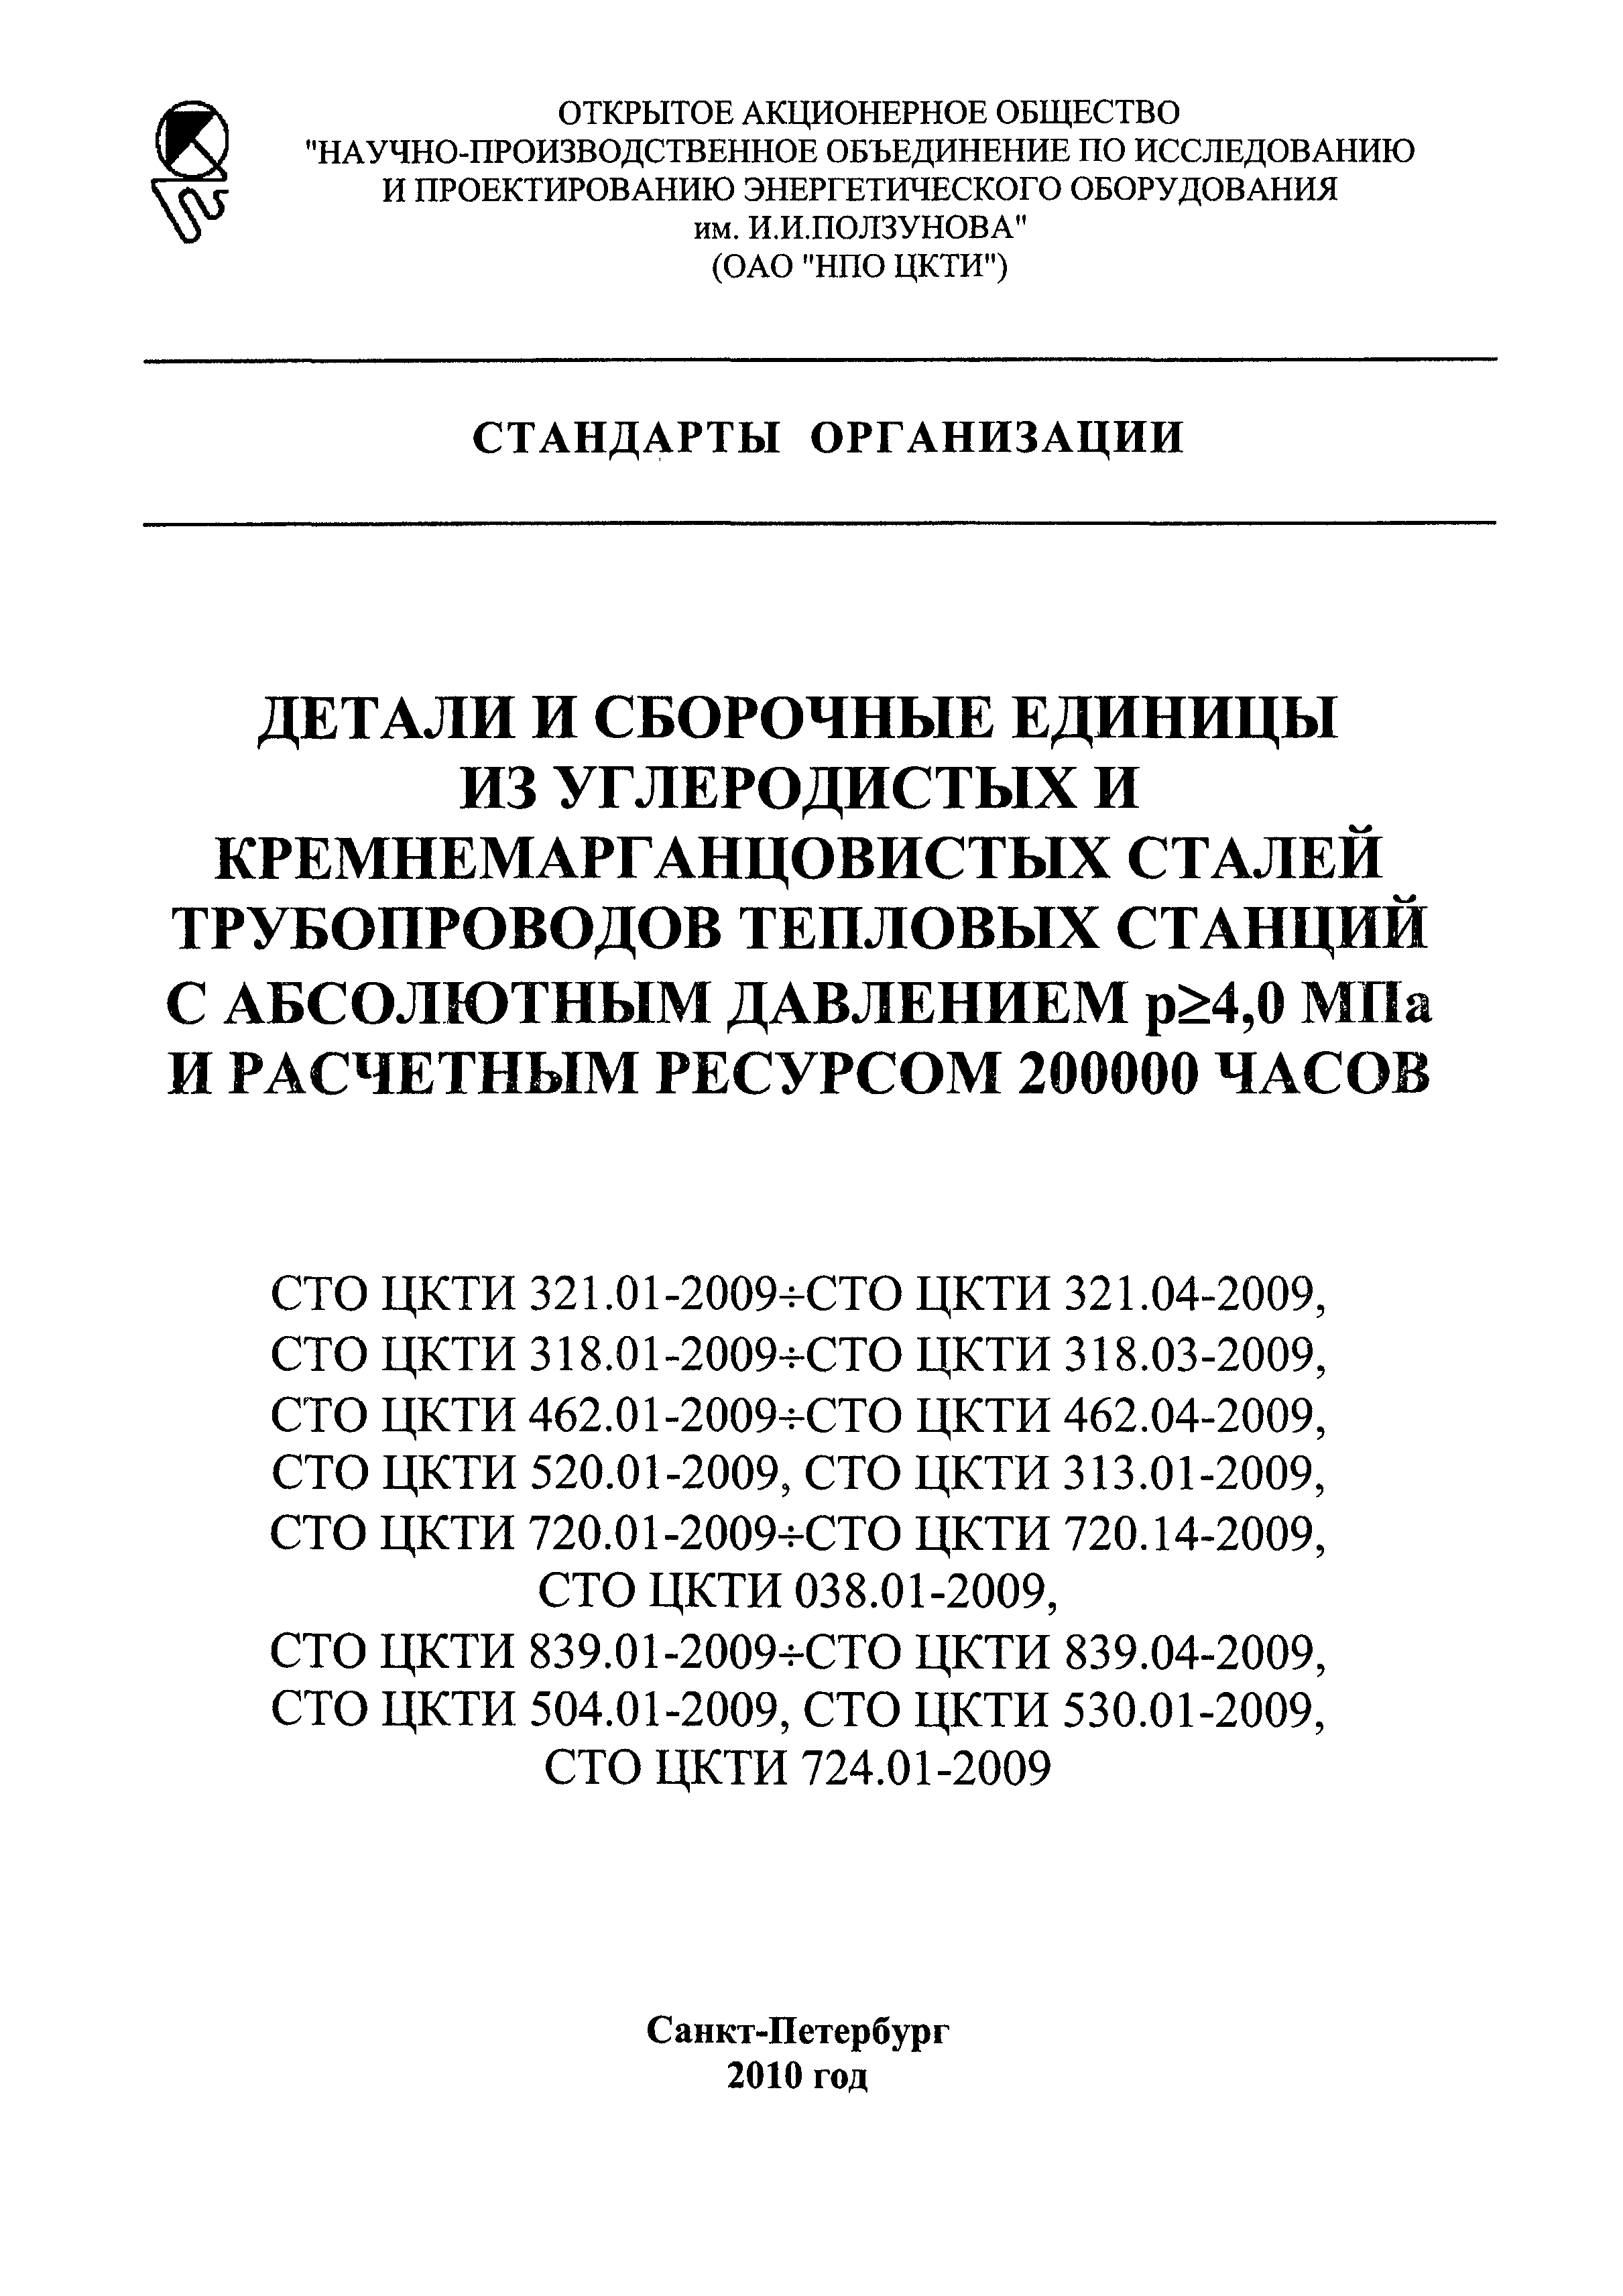 СТО ЦКТИ 839.01-2009